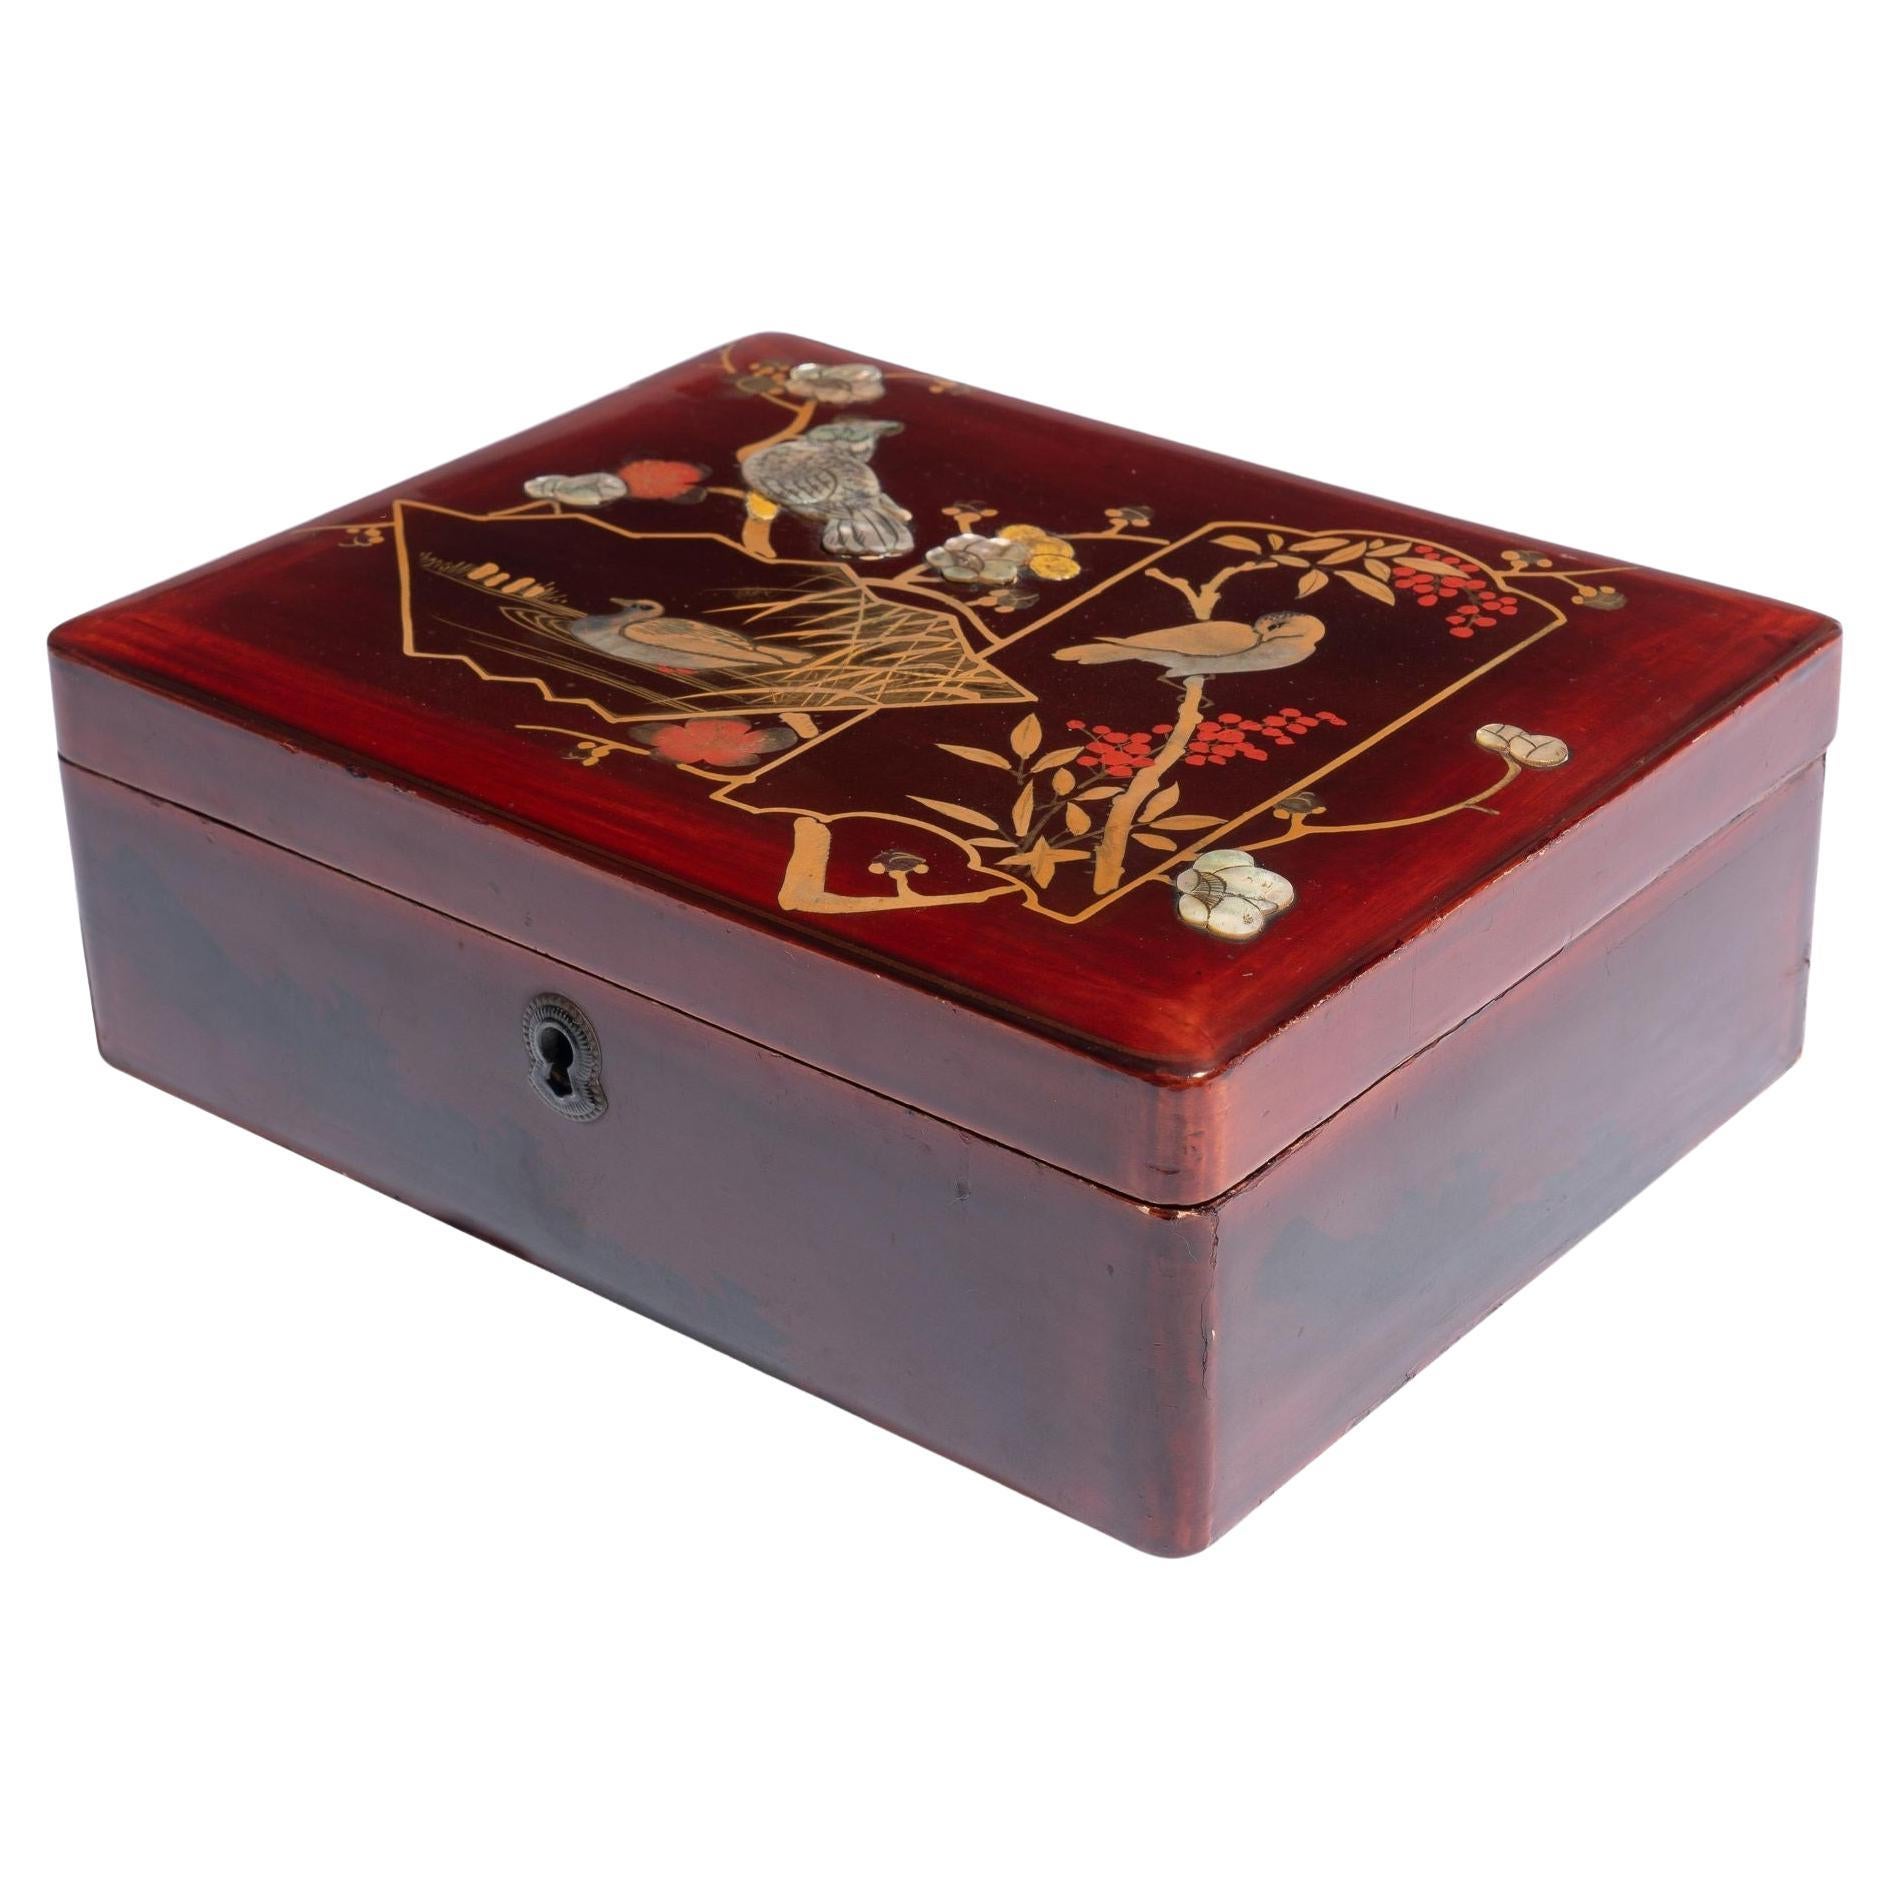 Ancienne boîte japonaise laquée, émaillée et incrustée avec couvercle à charnière, vers 1800